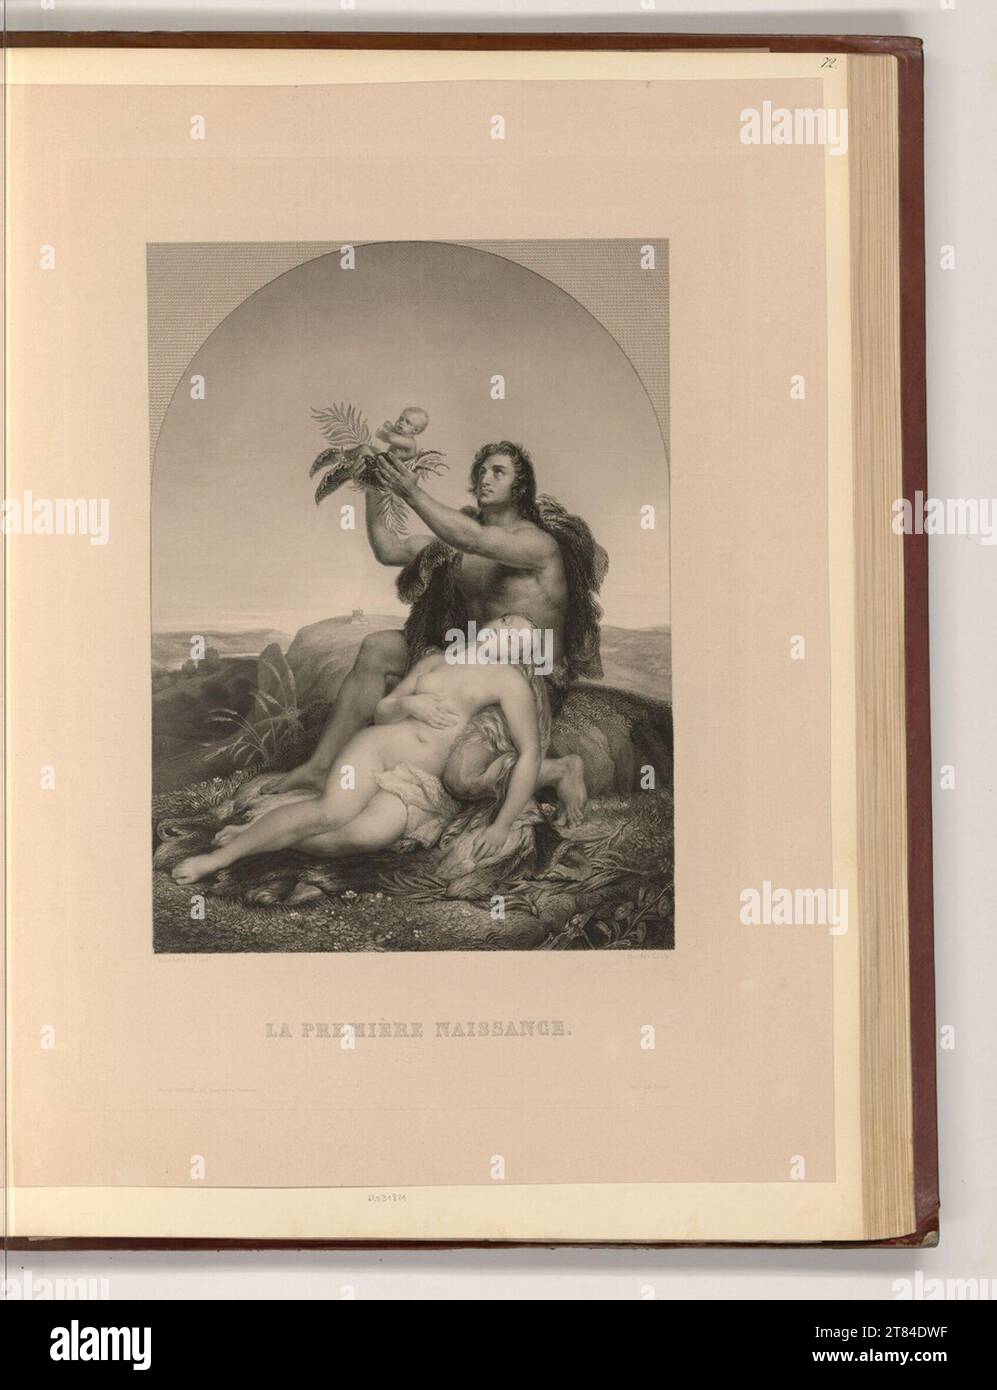 Unbestimmt (graveur) la première naissance. Gravure sur cuivre, gravure 19. Siècle , 19e siècle Banque D'Images